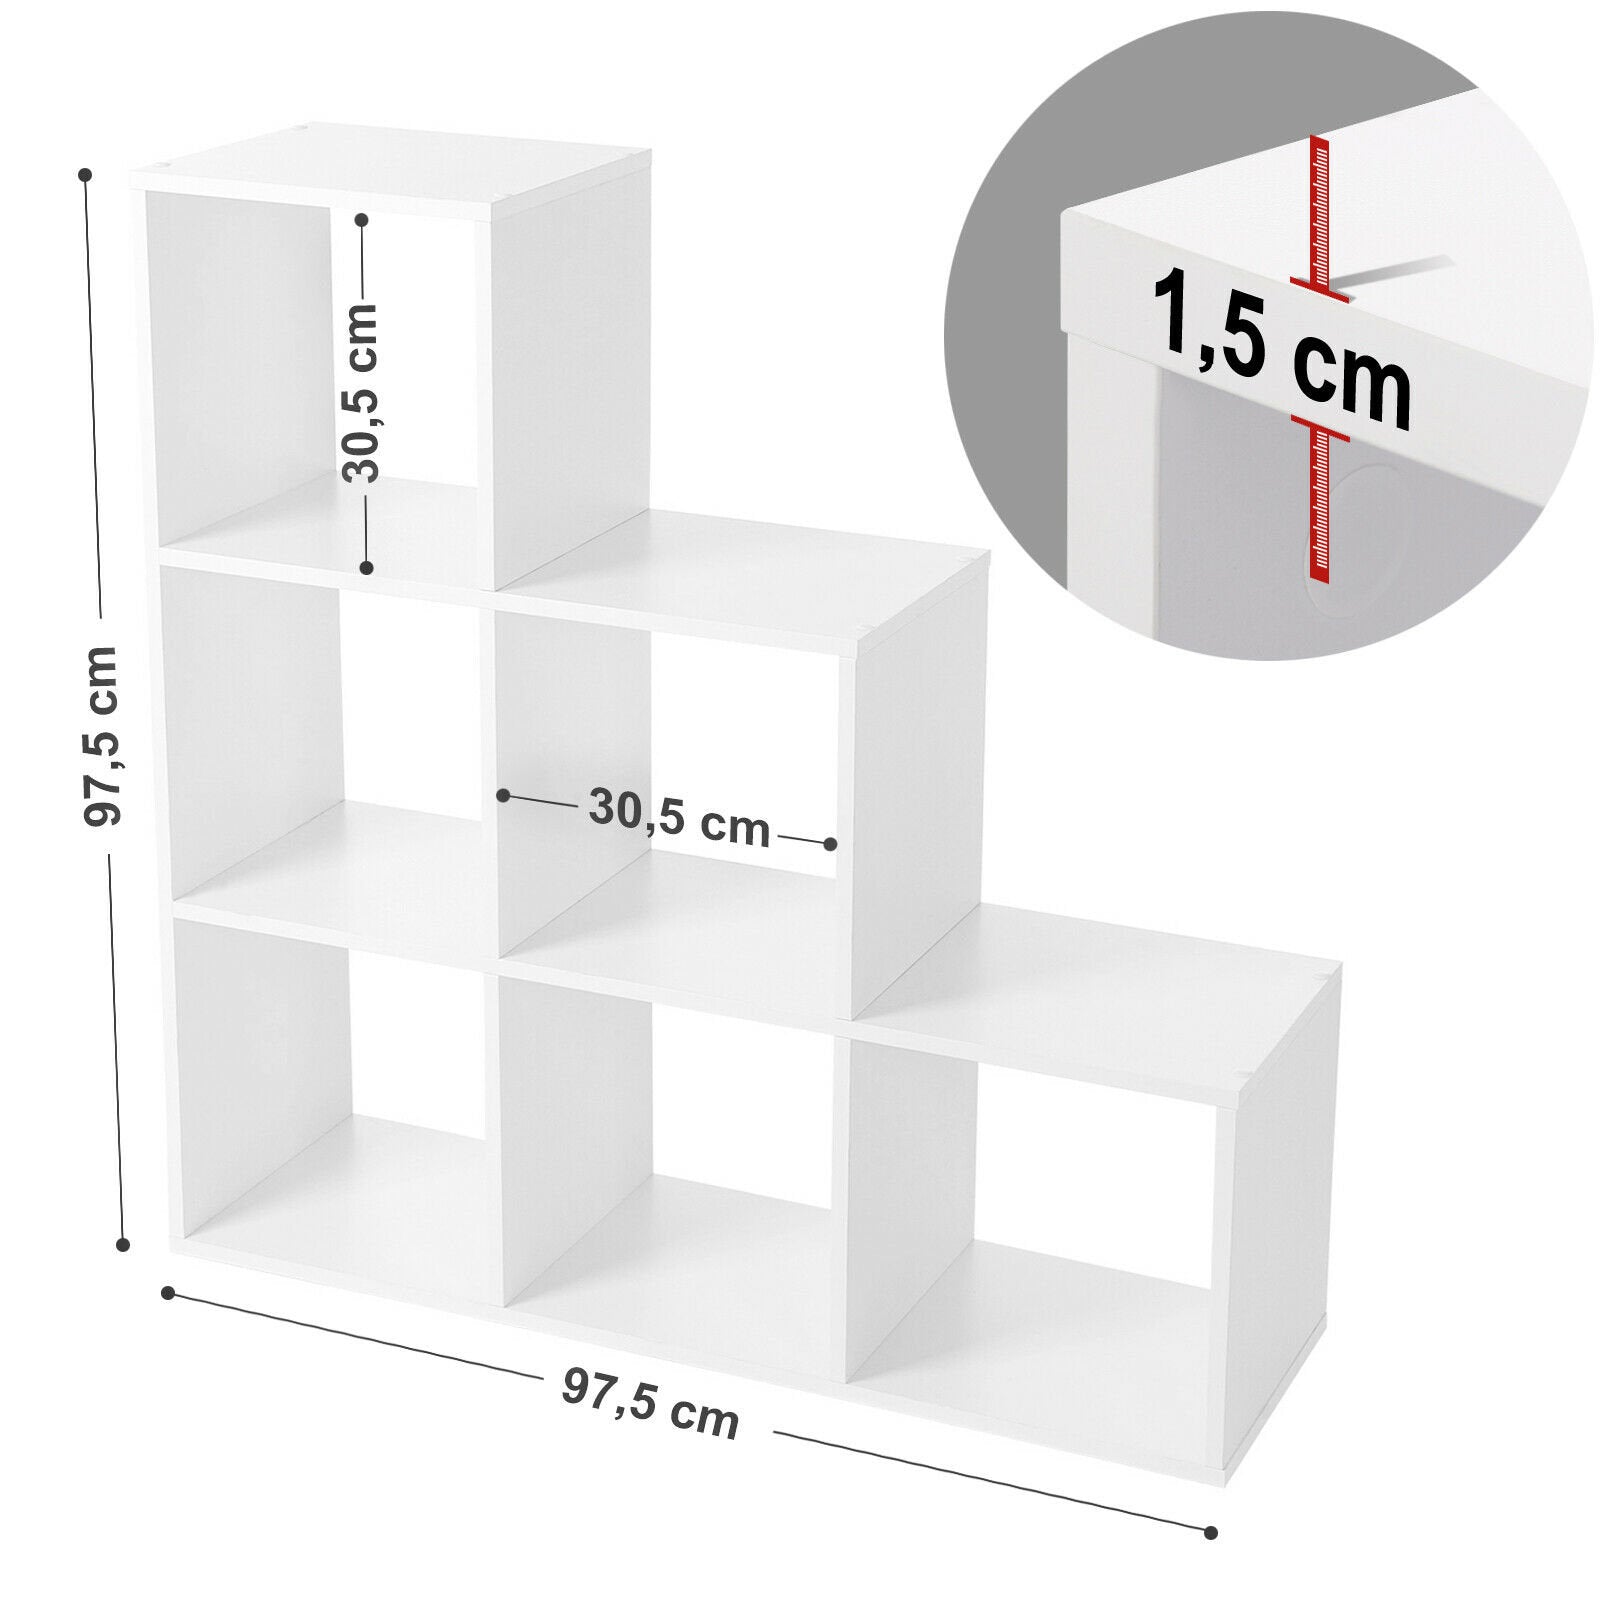 Softline Cube Storage Unit White